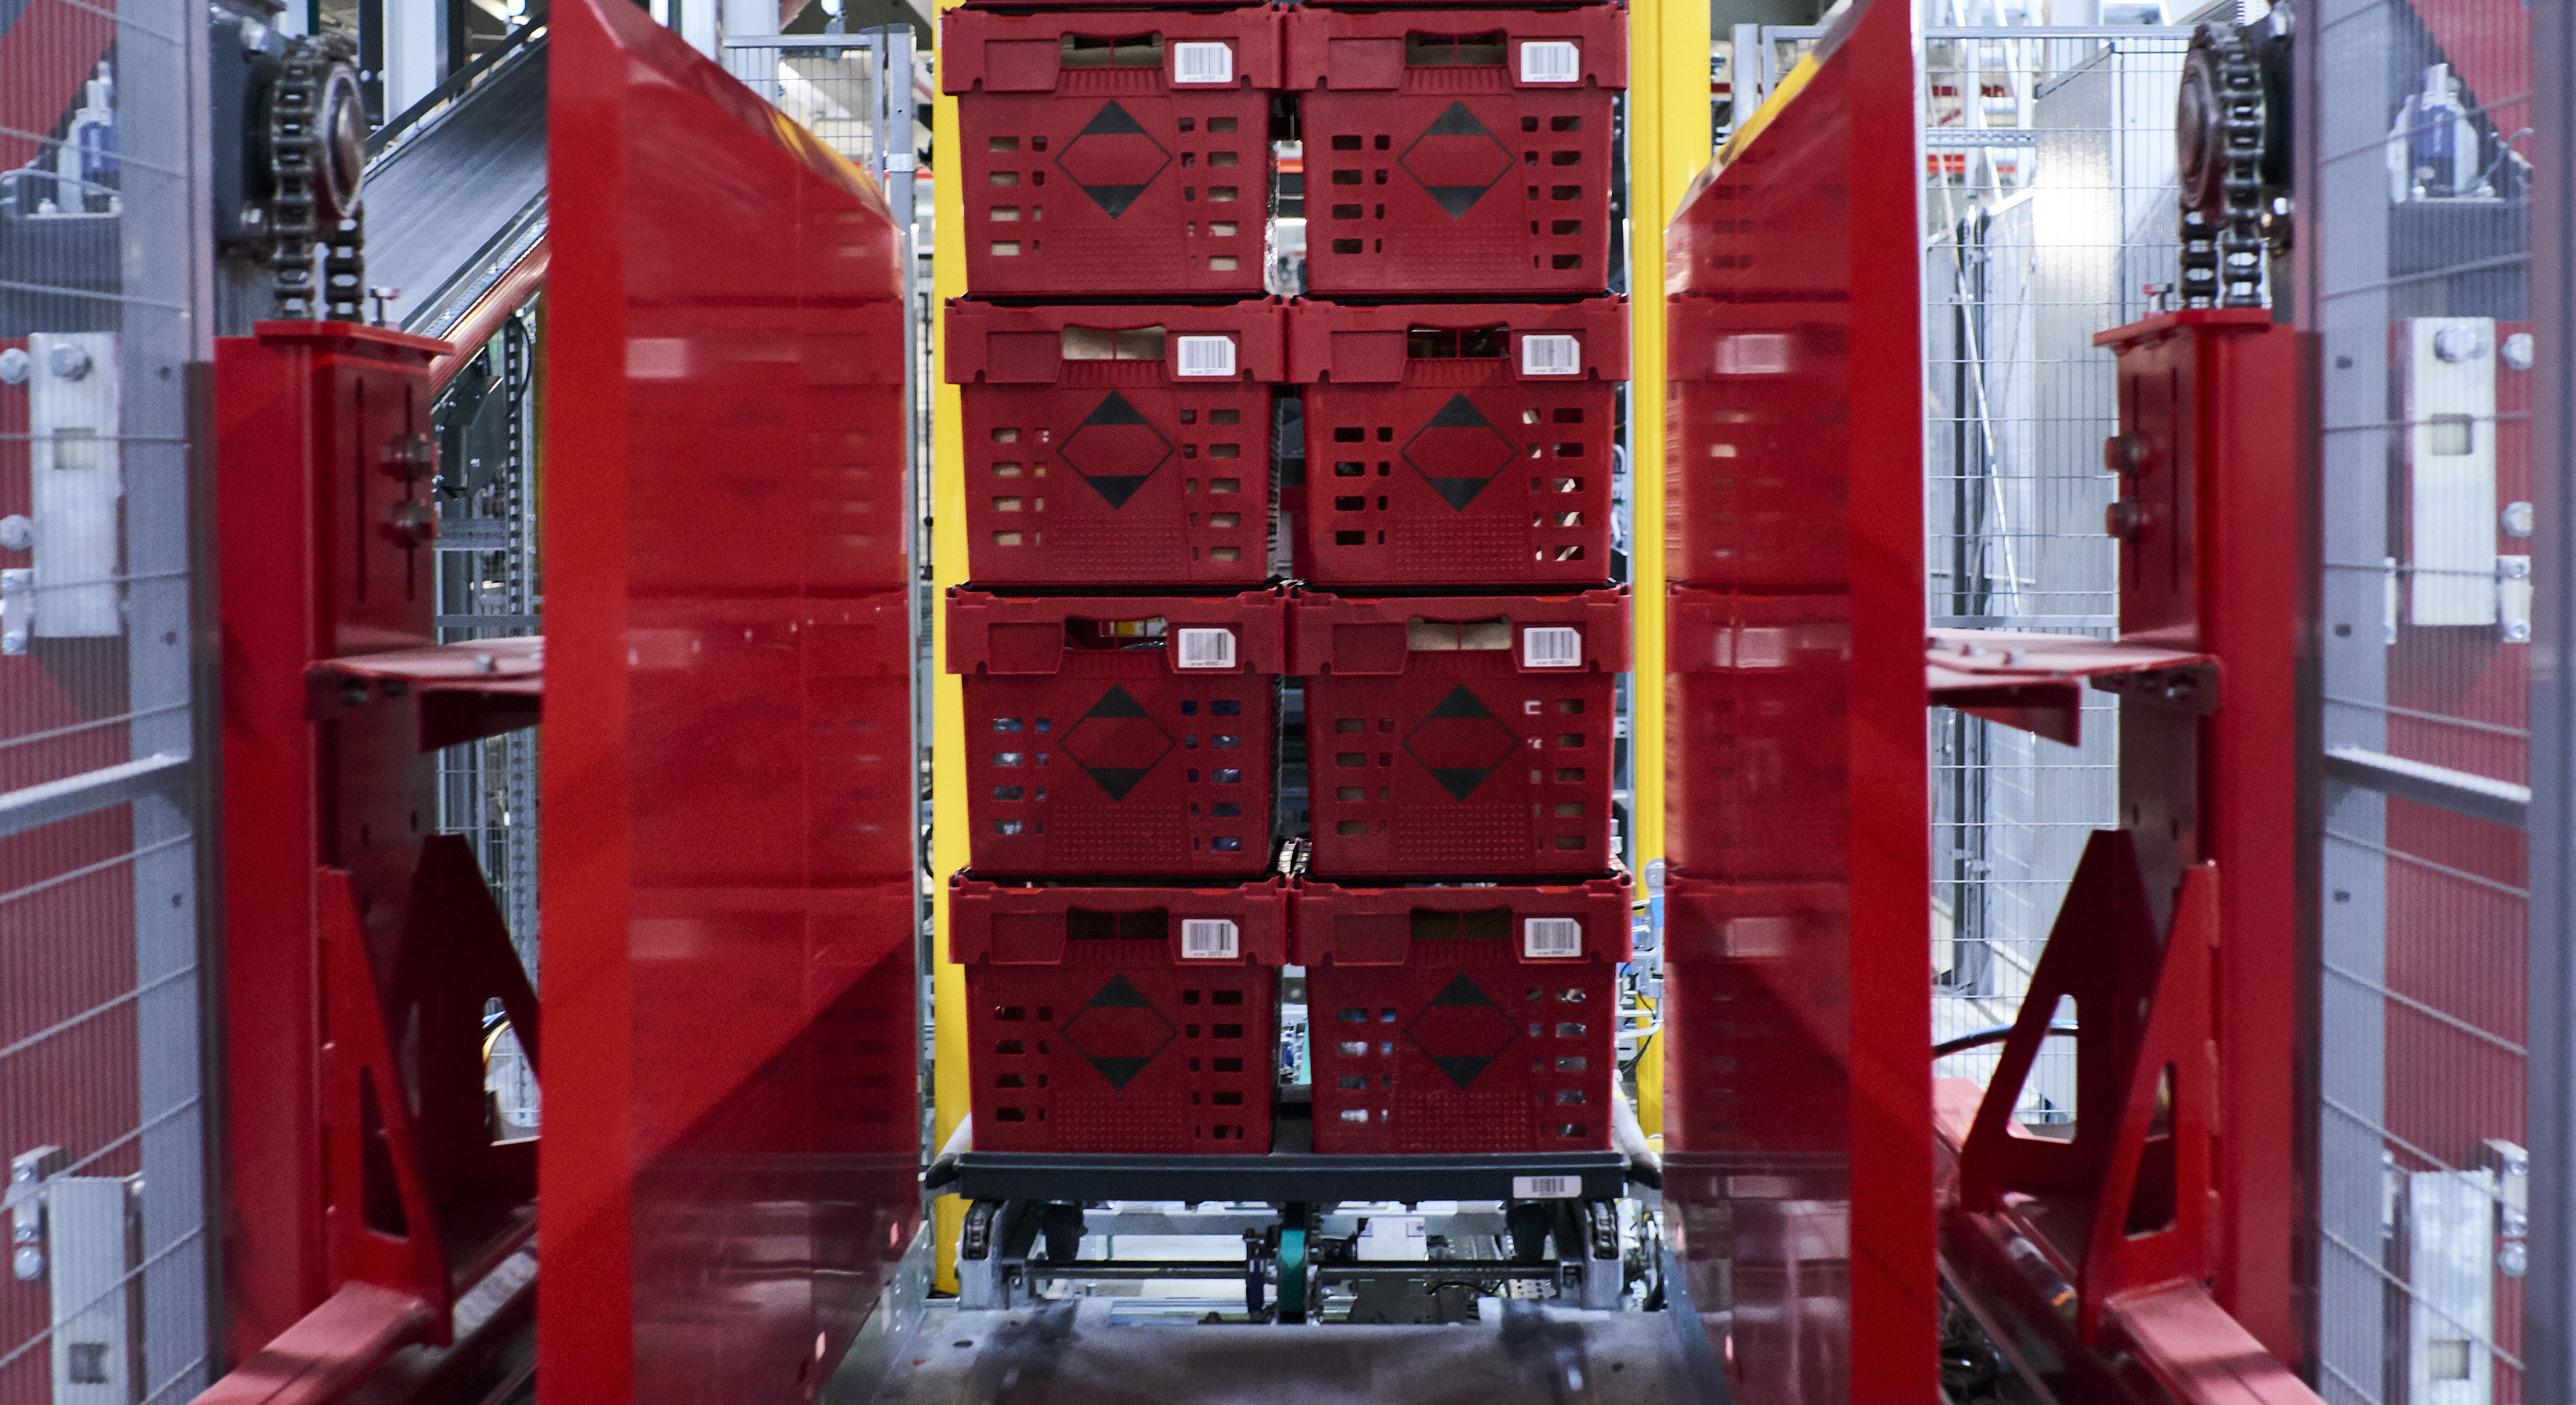 La imagen muestra contenedores rojos que se apilan unos sobre otros con ayuda de una tecnología automatizada.